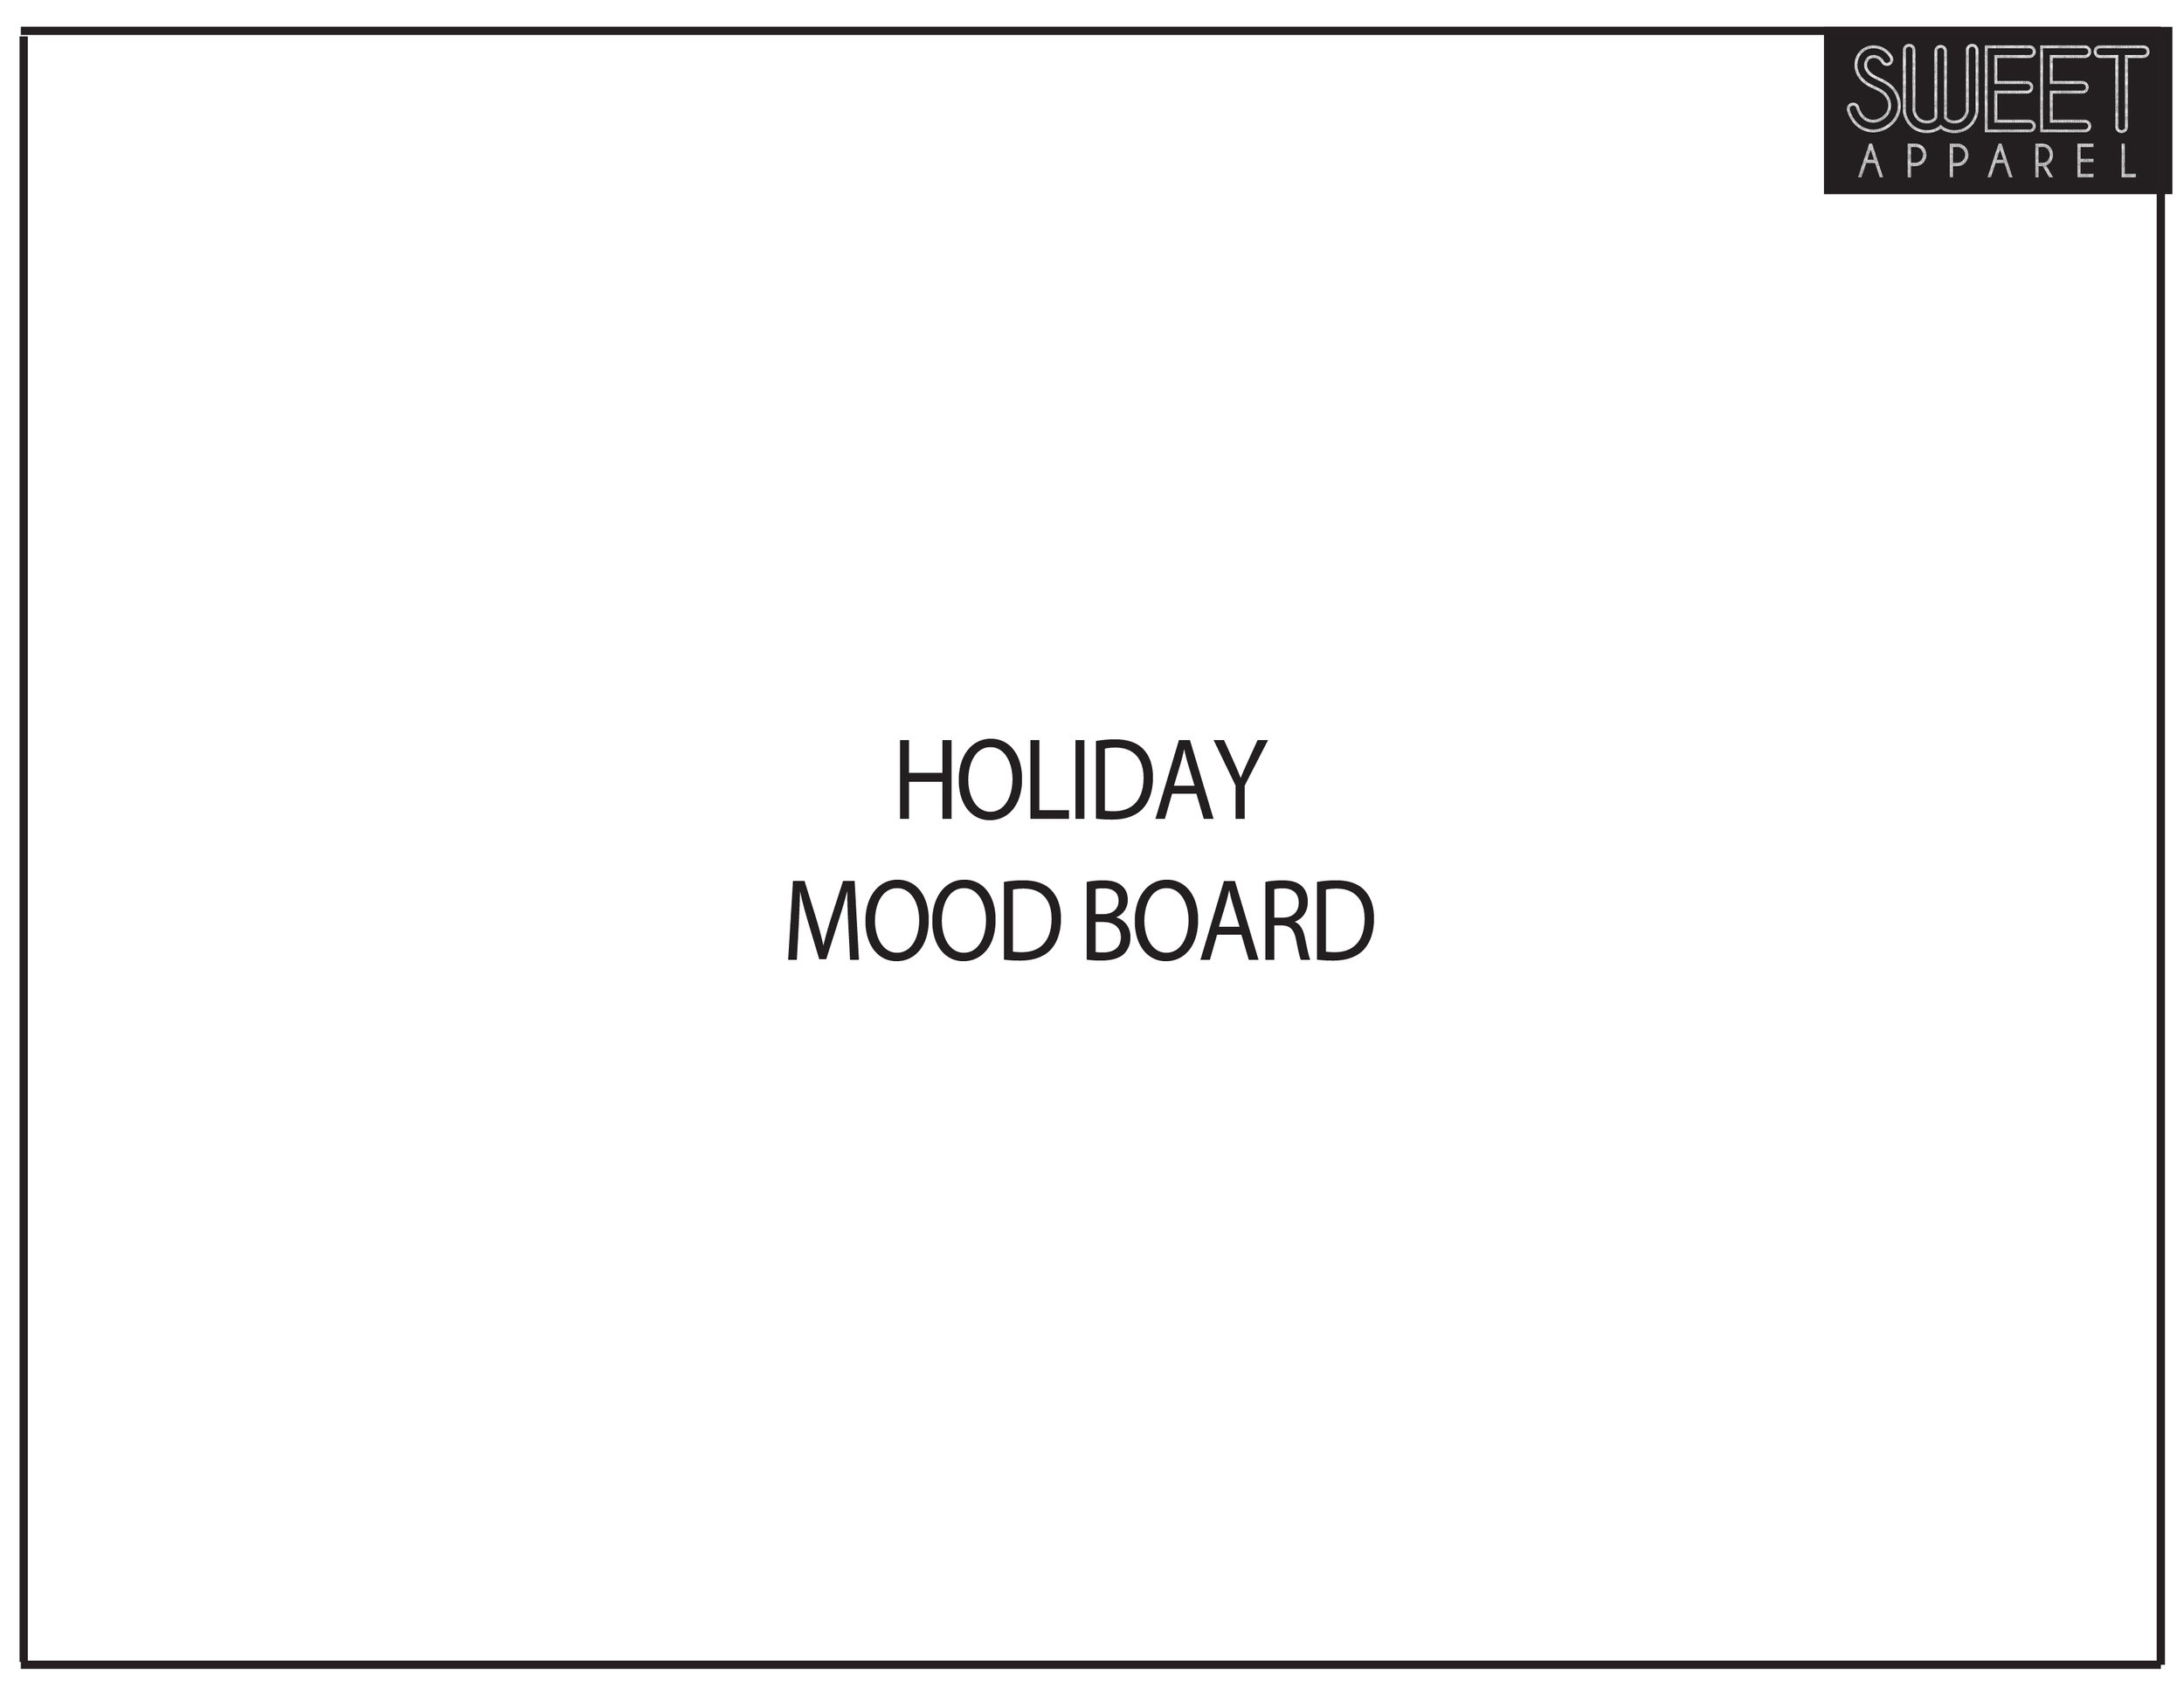 HOLIDAY_MOODBOARD_title-01.jpg